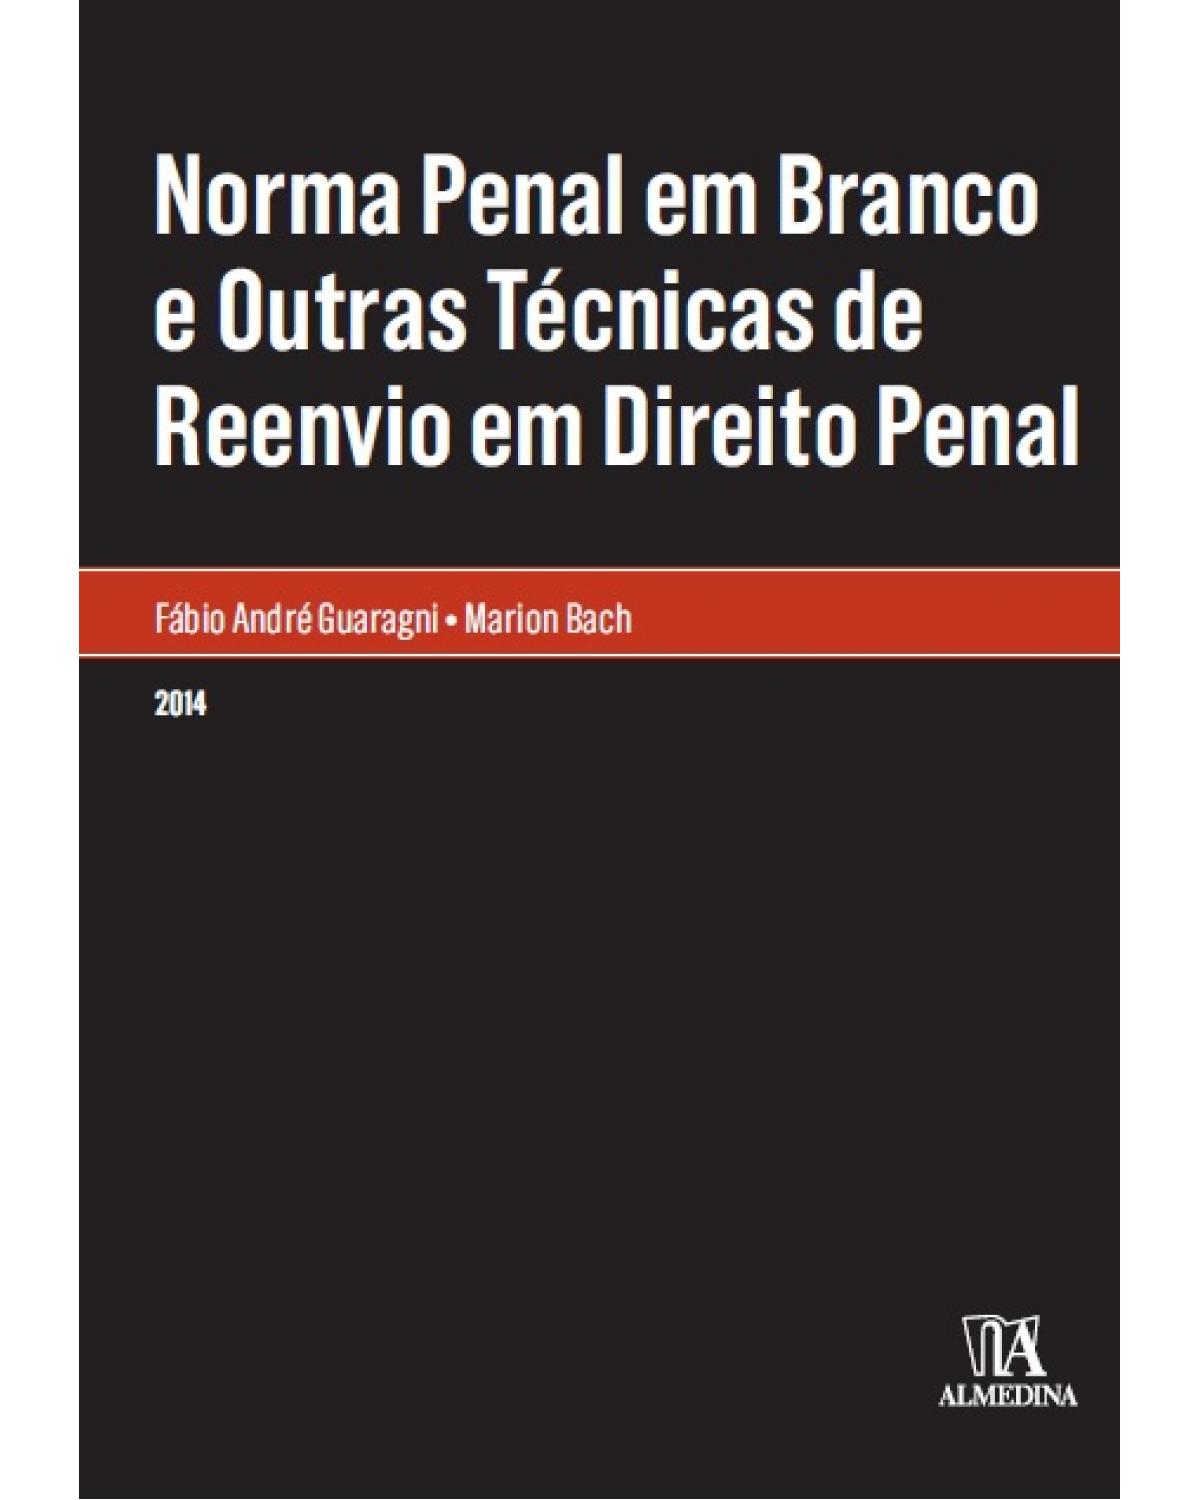 Norma penal em branco e outras técnicas de reenvio em direito penal - 1ª Edição | 2014